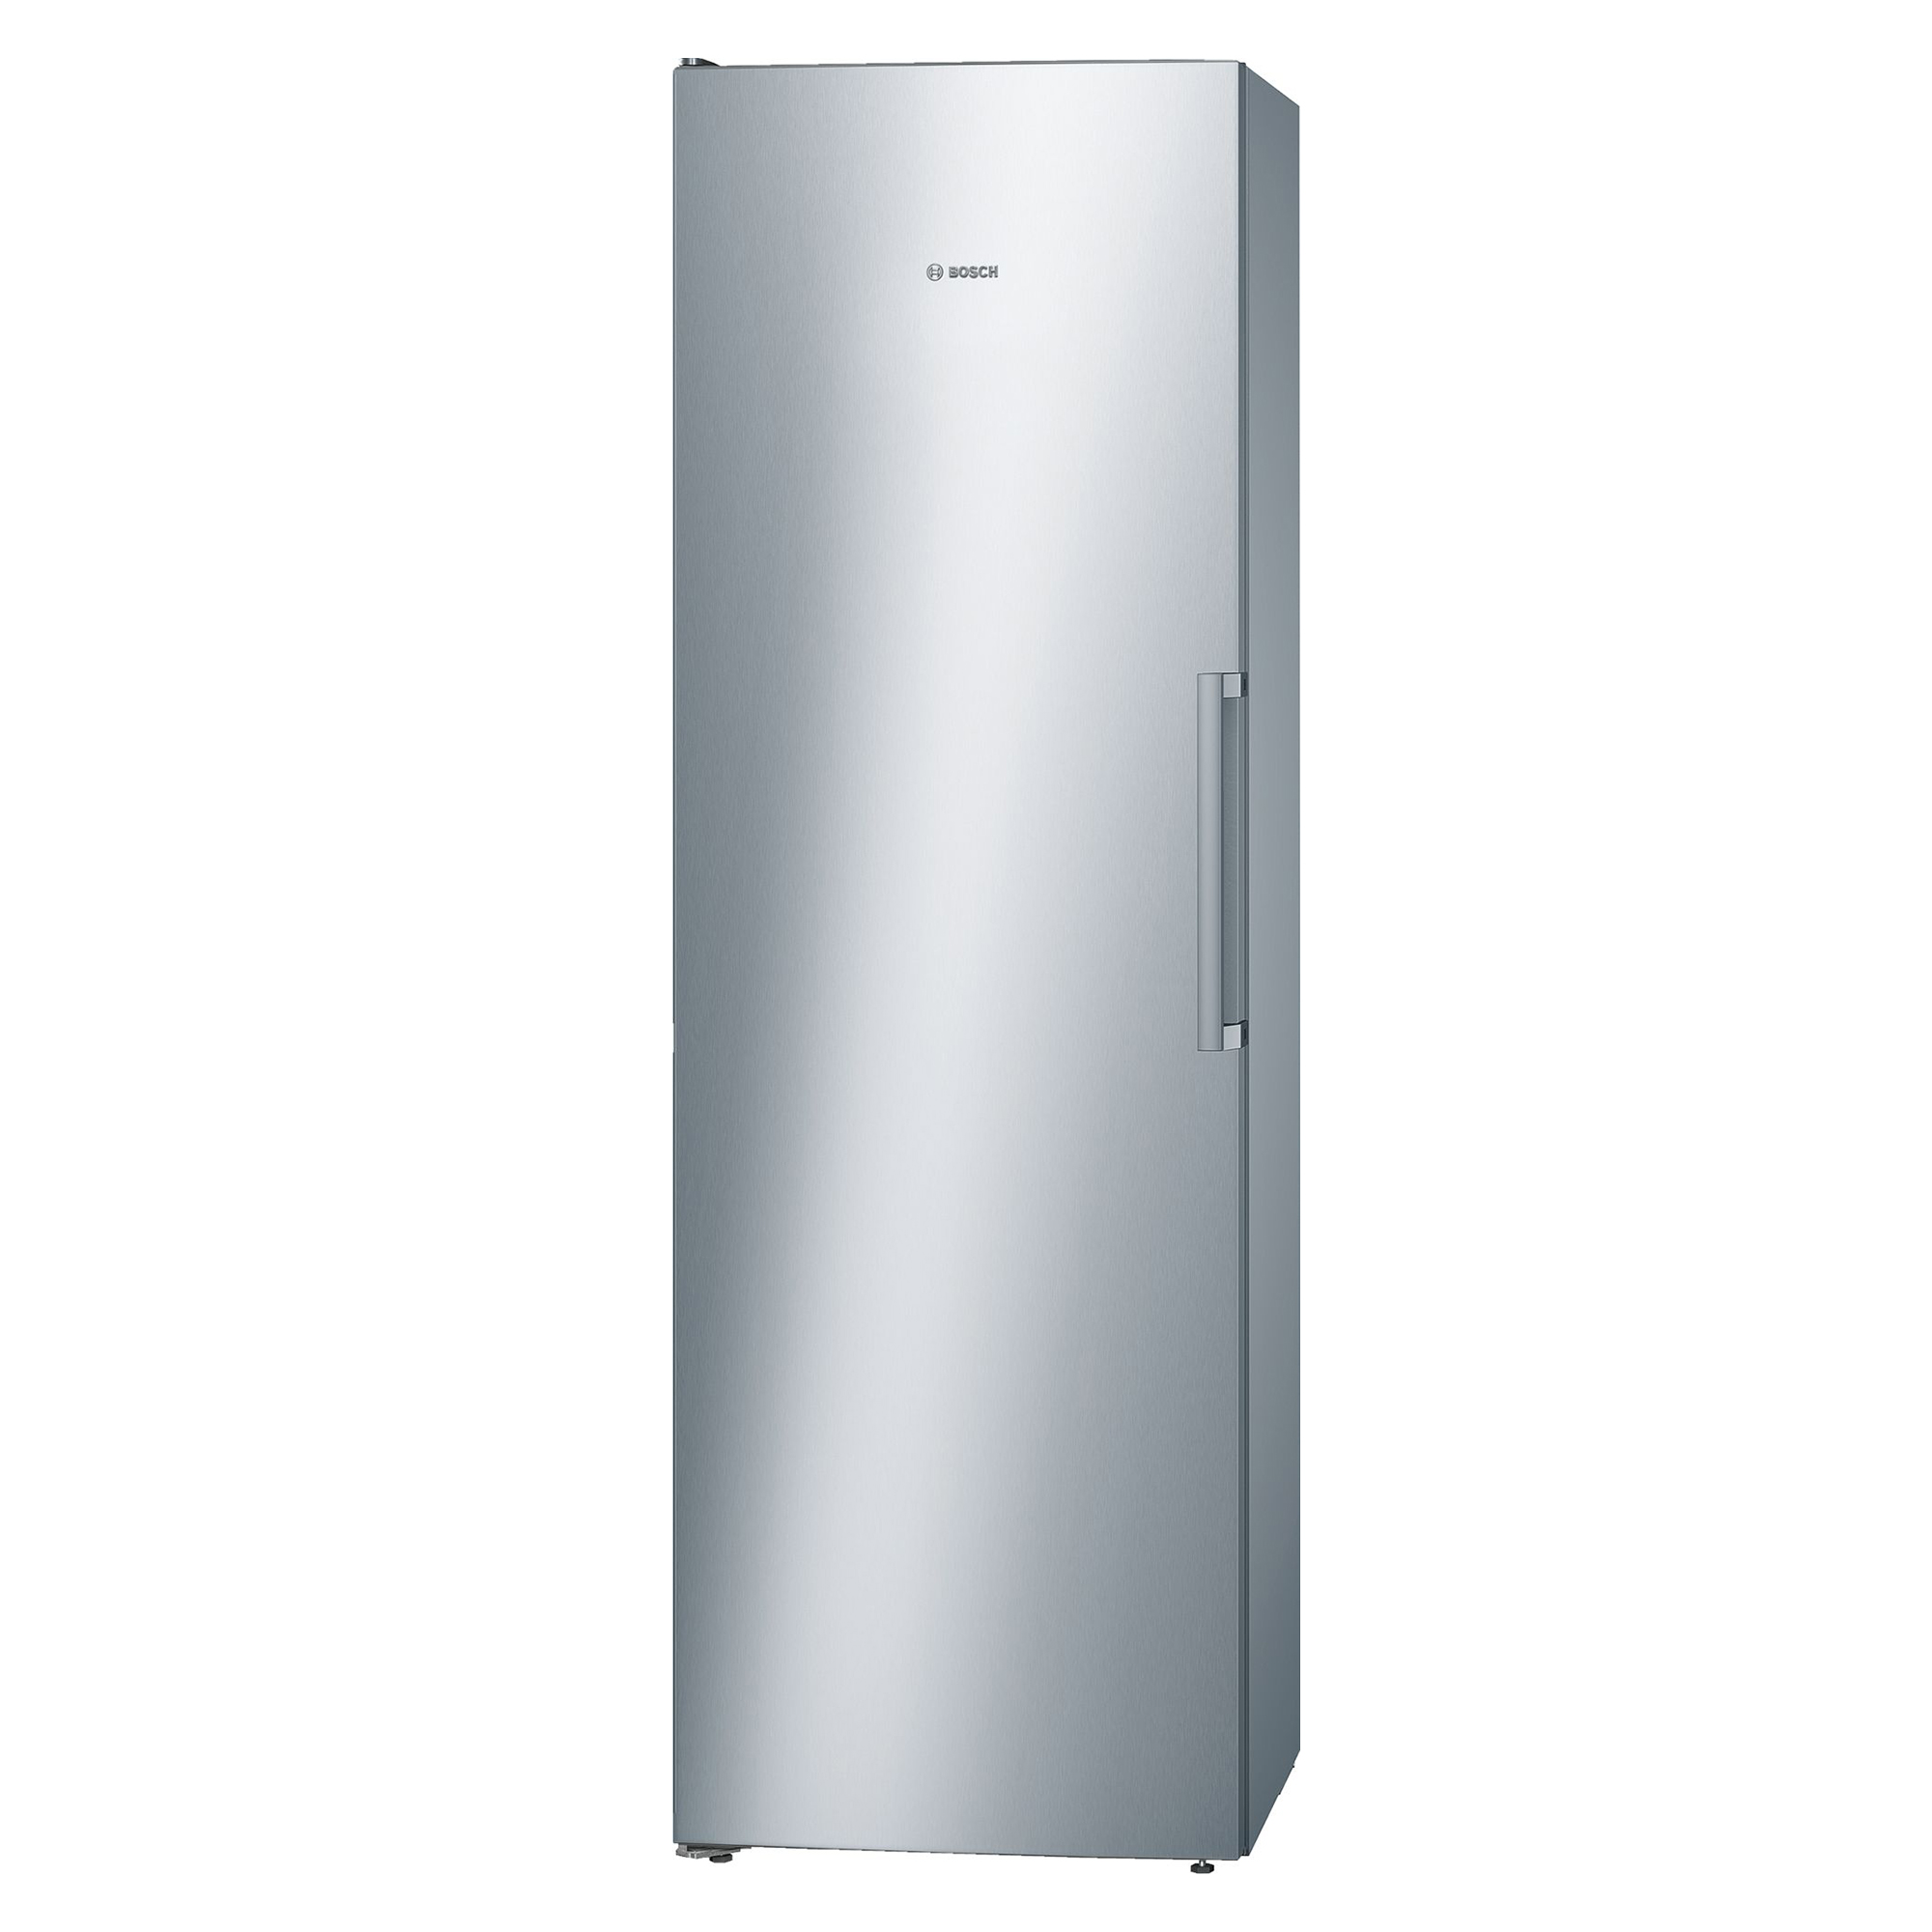 Tủ lạnh đơn Bosch Serie 4 346 lít KSV36VI30